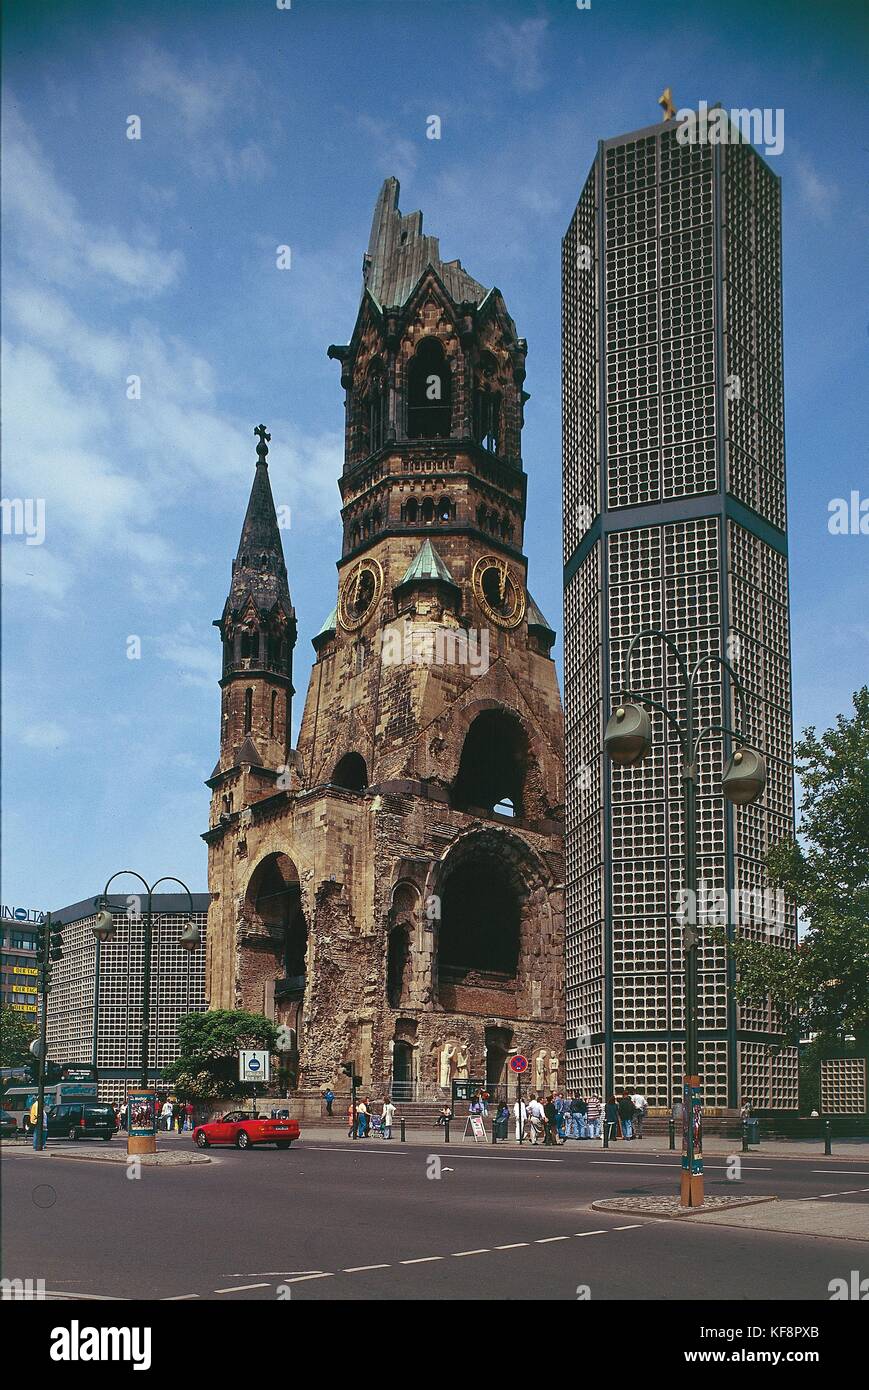 Germania Berlino. Il Kaiser Wilhelm gedaechtnis Kirche (Chiesa della Rimembranza), costituito dalle rovine della chiesa originaria (1891-1895) e il nuovo edificio progettato da Egon Eiermann (1959-1961). Foto Stock